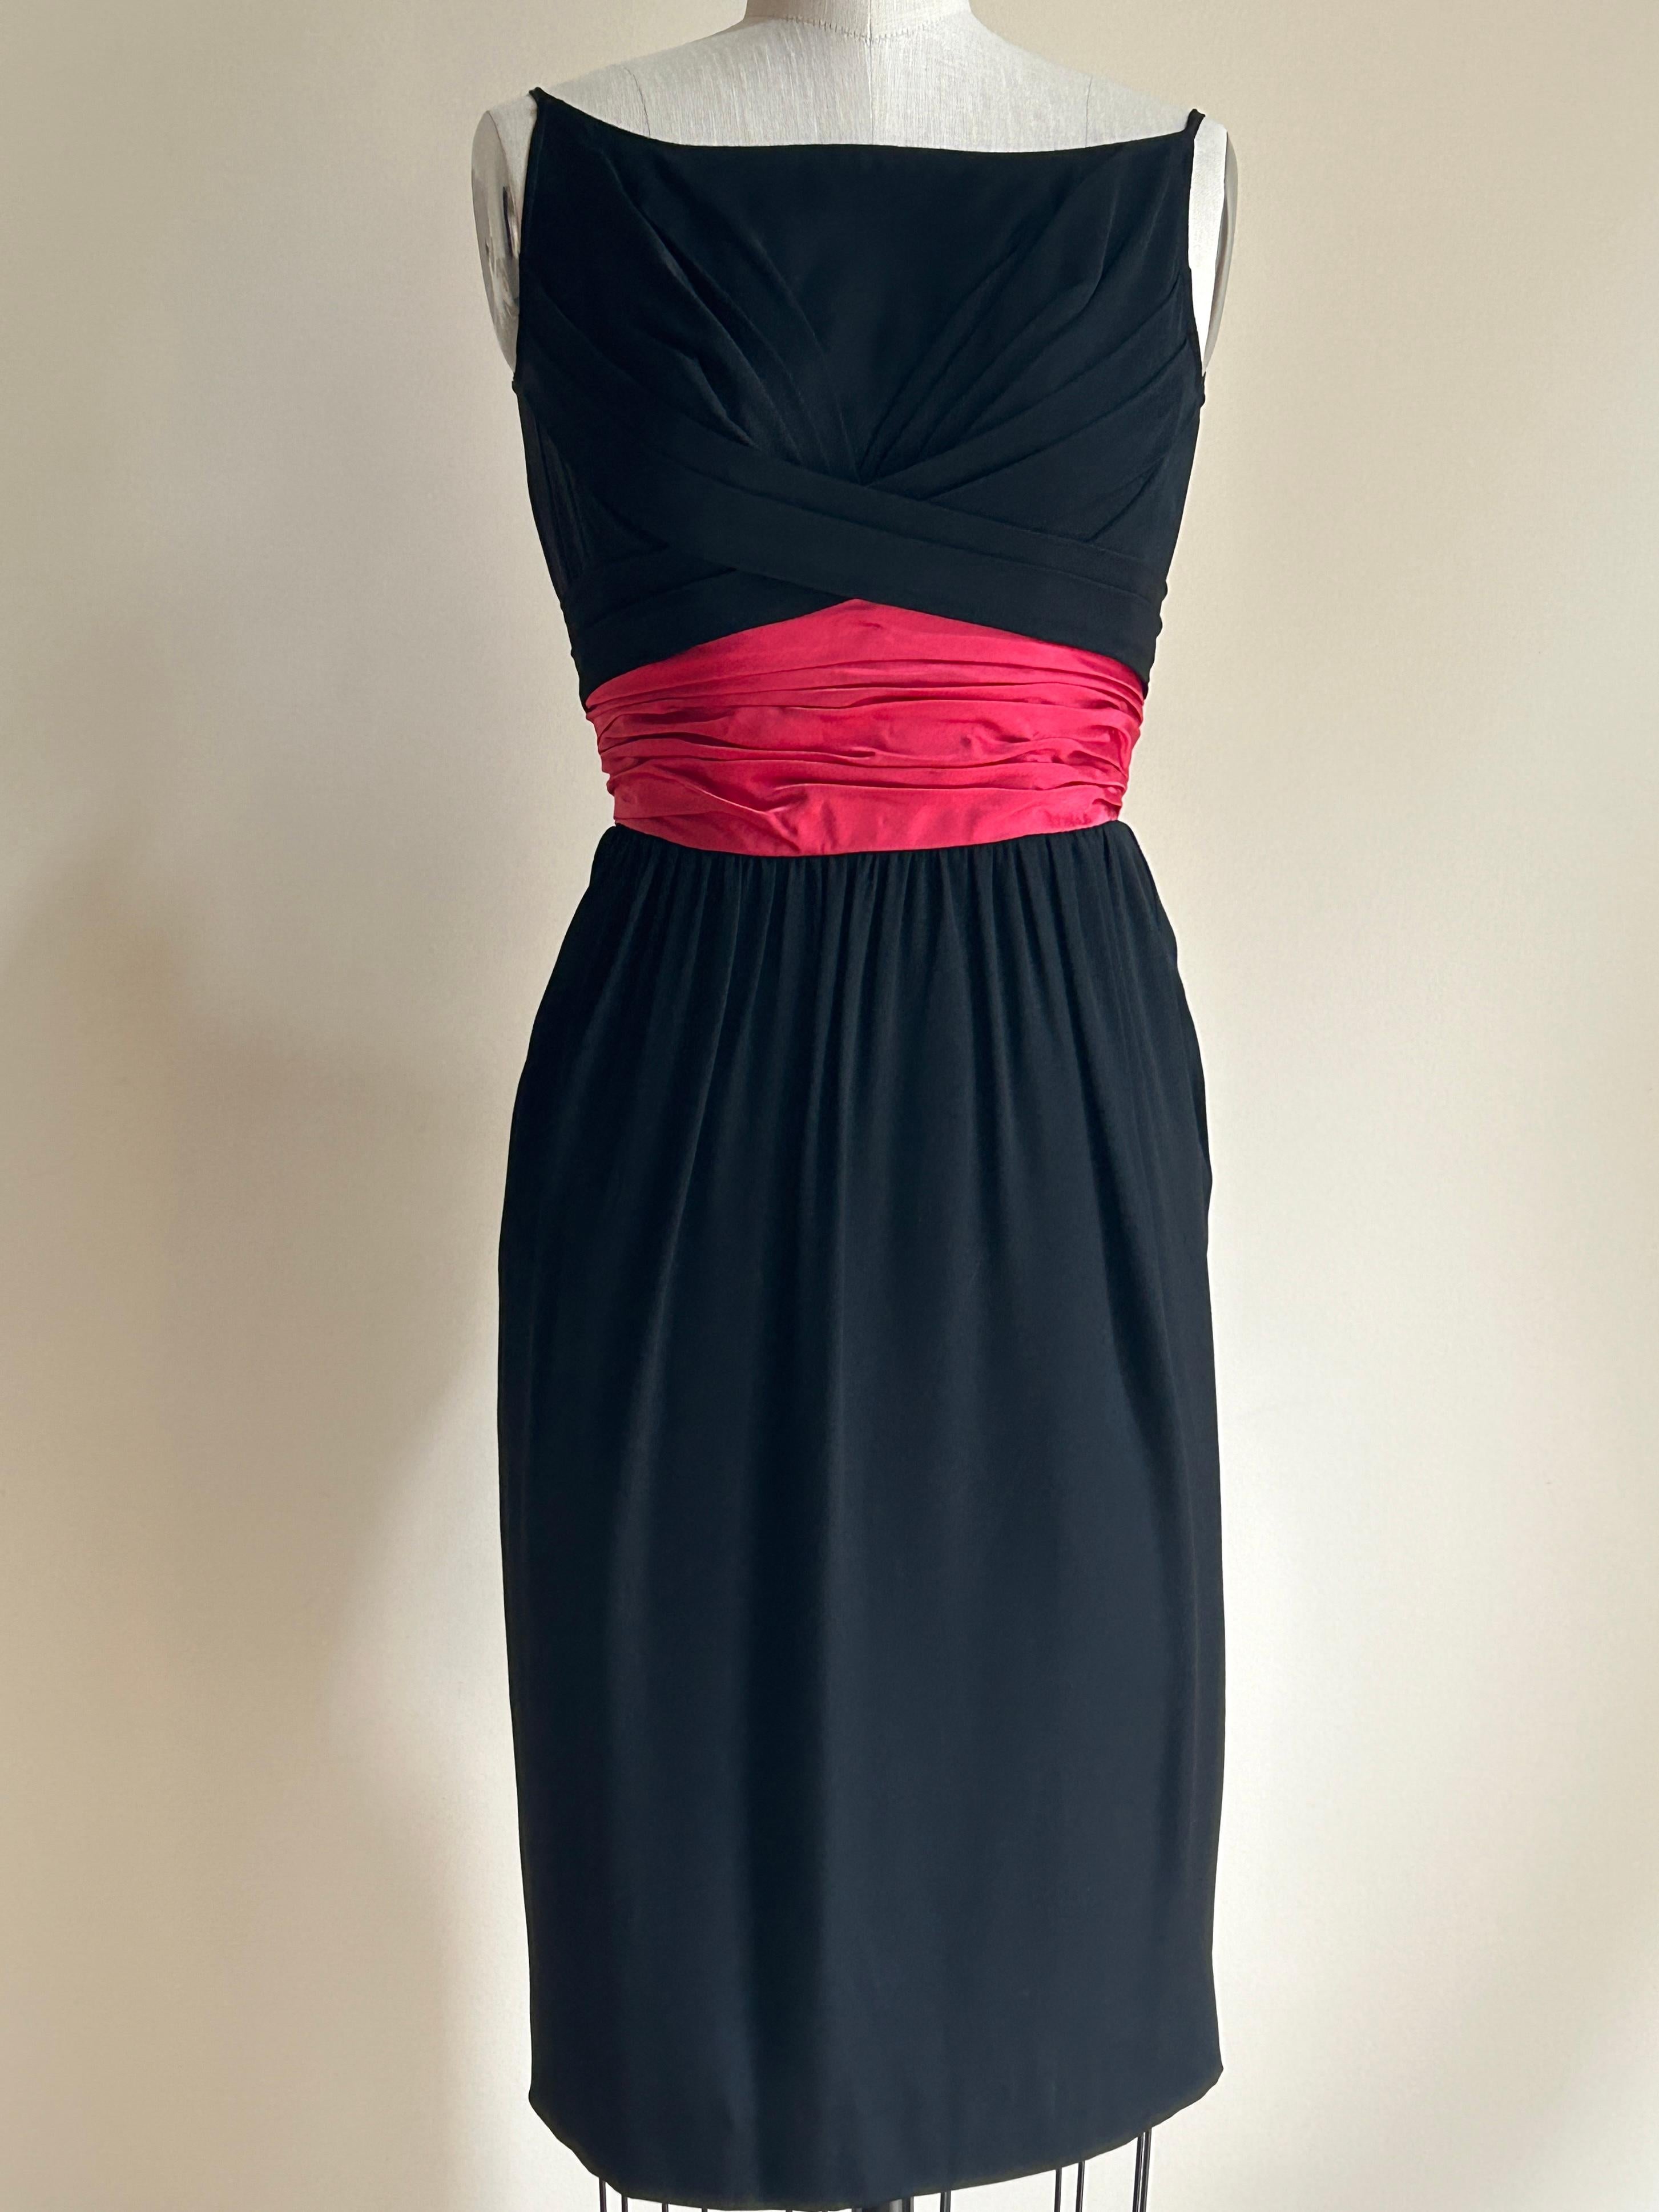 Ceil Chapman Vintage 1950s ärmelloses schwarzes Bootneck-Kleid mit schmalen Trägern an der oberen Schulter und gekreuzten Falten am vorderen und hinteren Mieder. Der Rock ist am tiefrosa/roten, an der Taille befestigten, schärpenartigen Detail aus